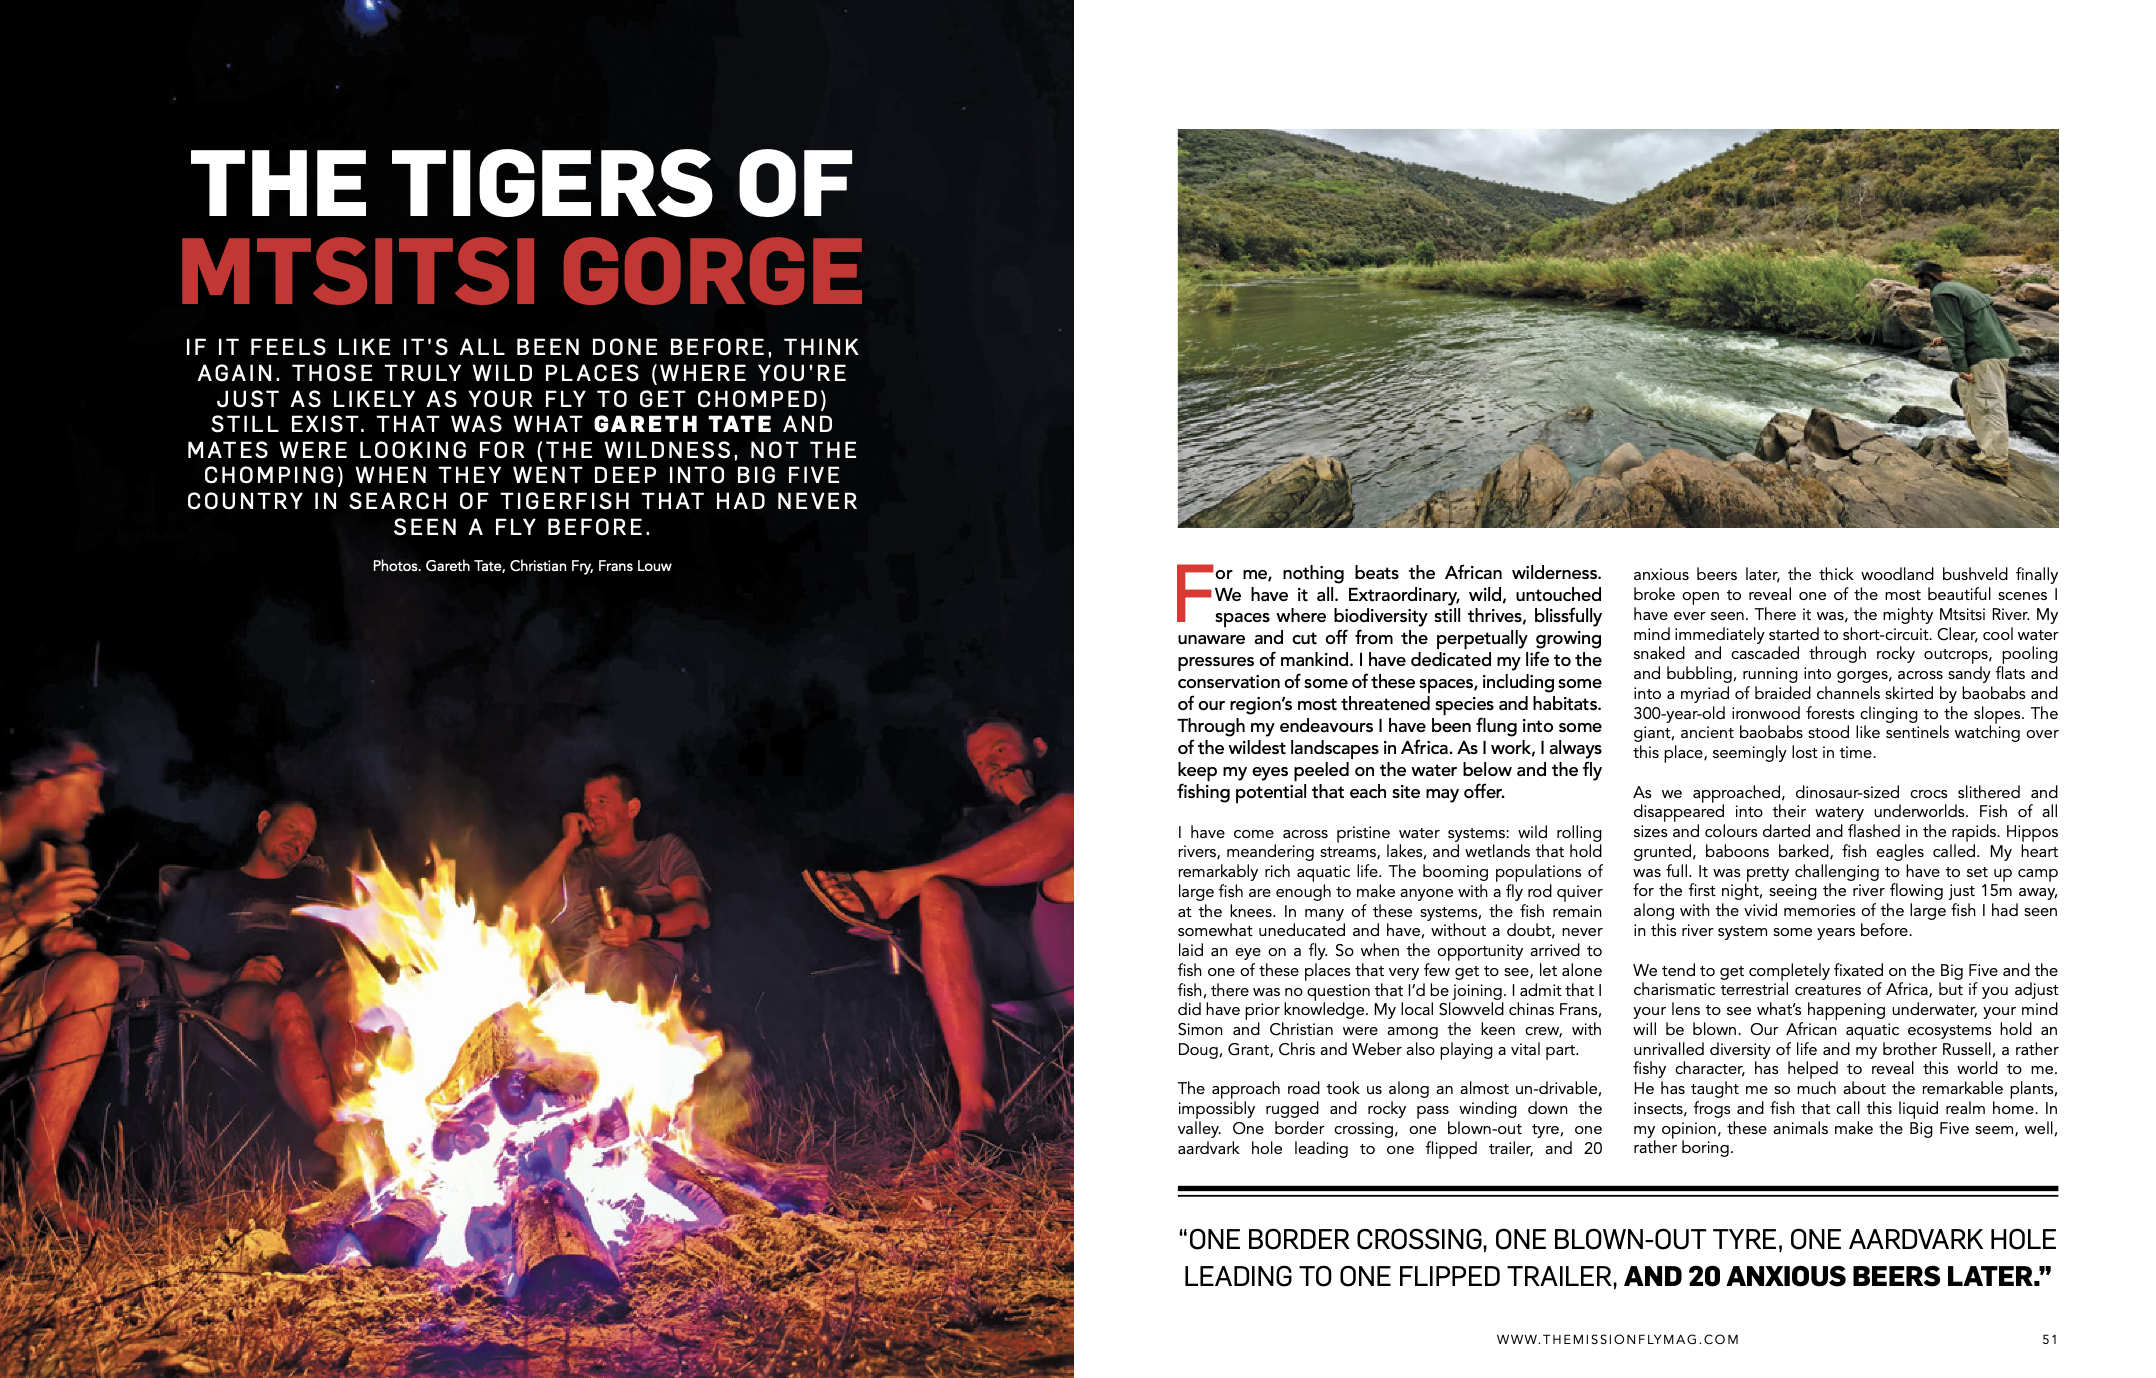 TIGERS of MTSITSI gorge